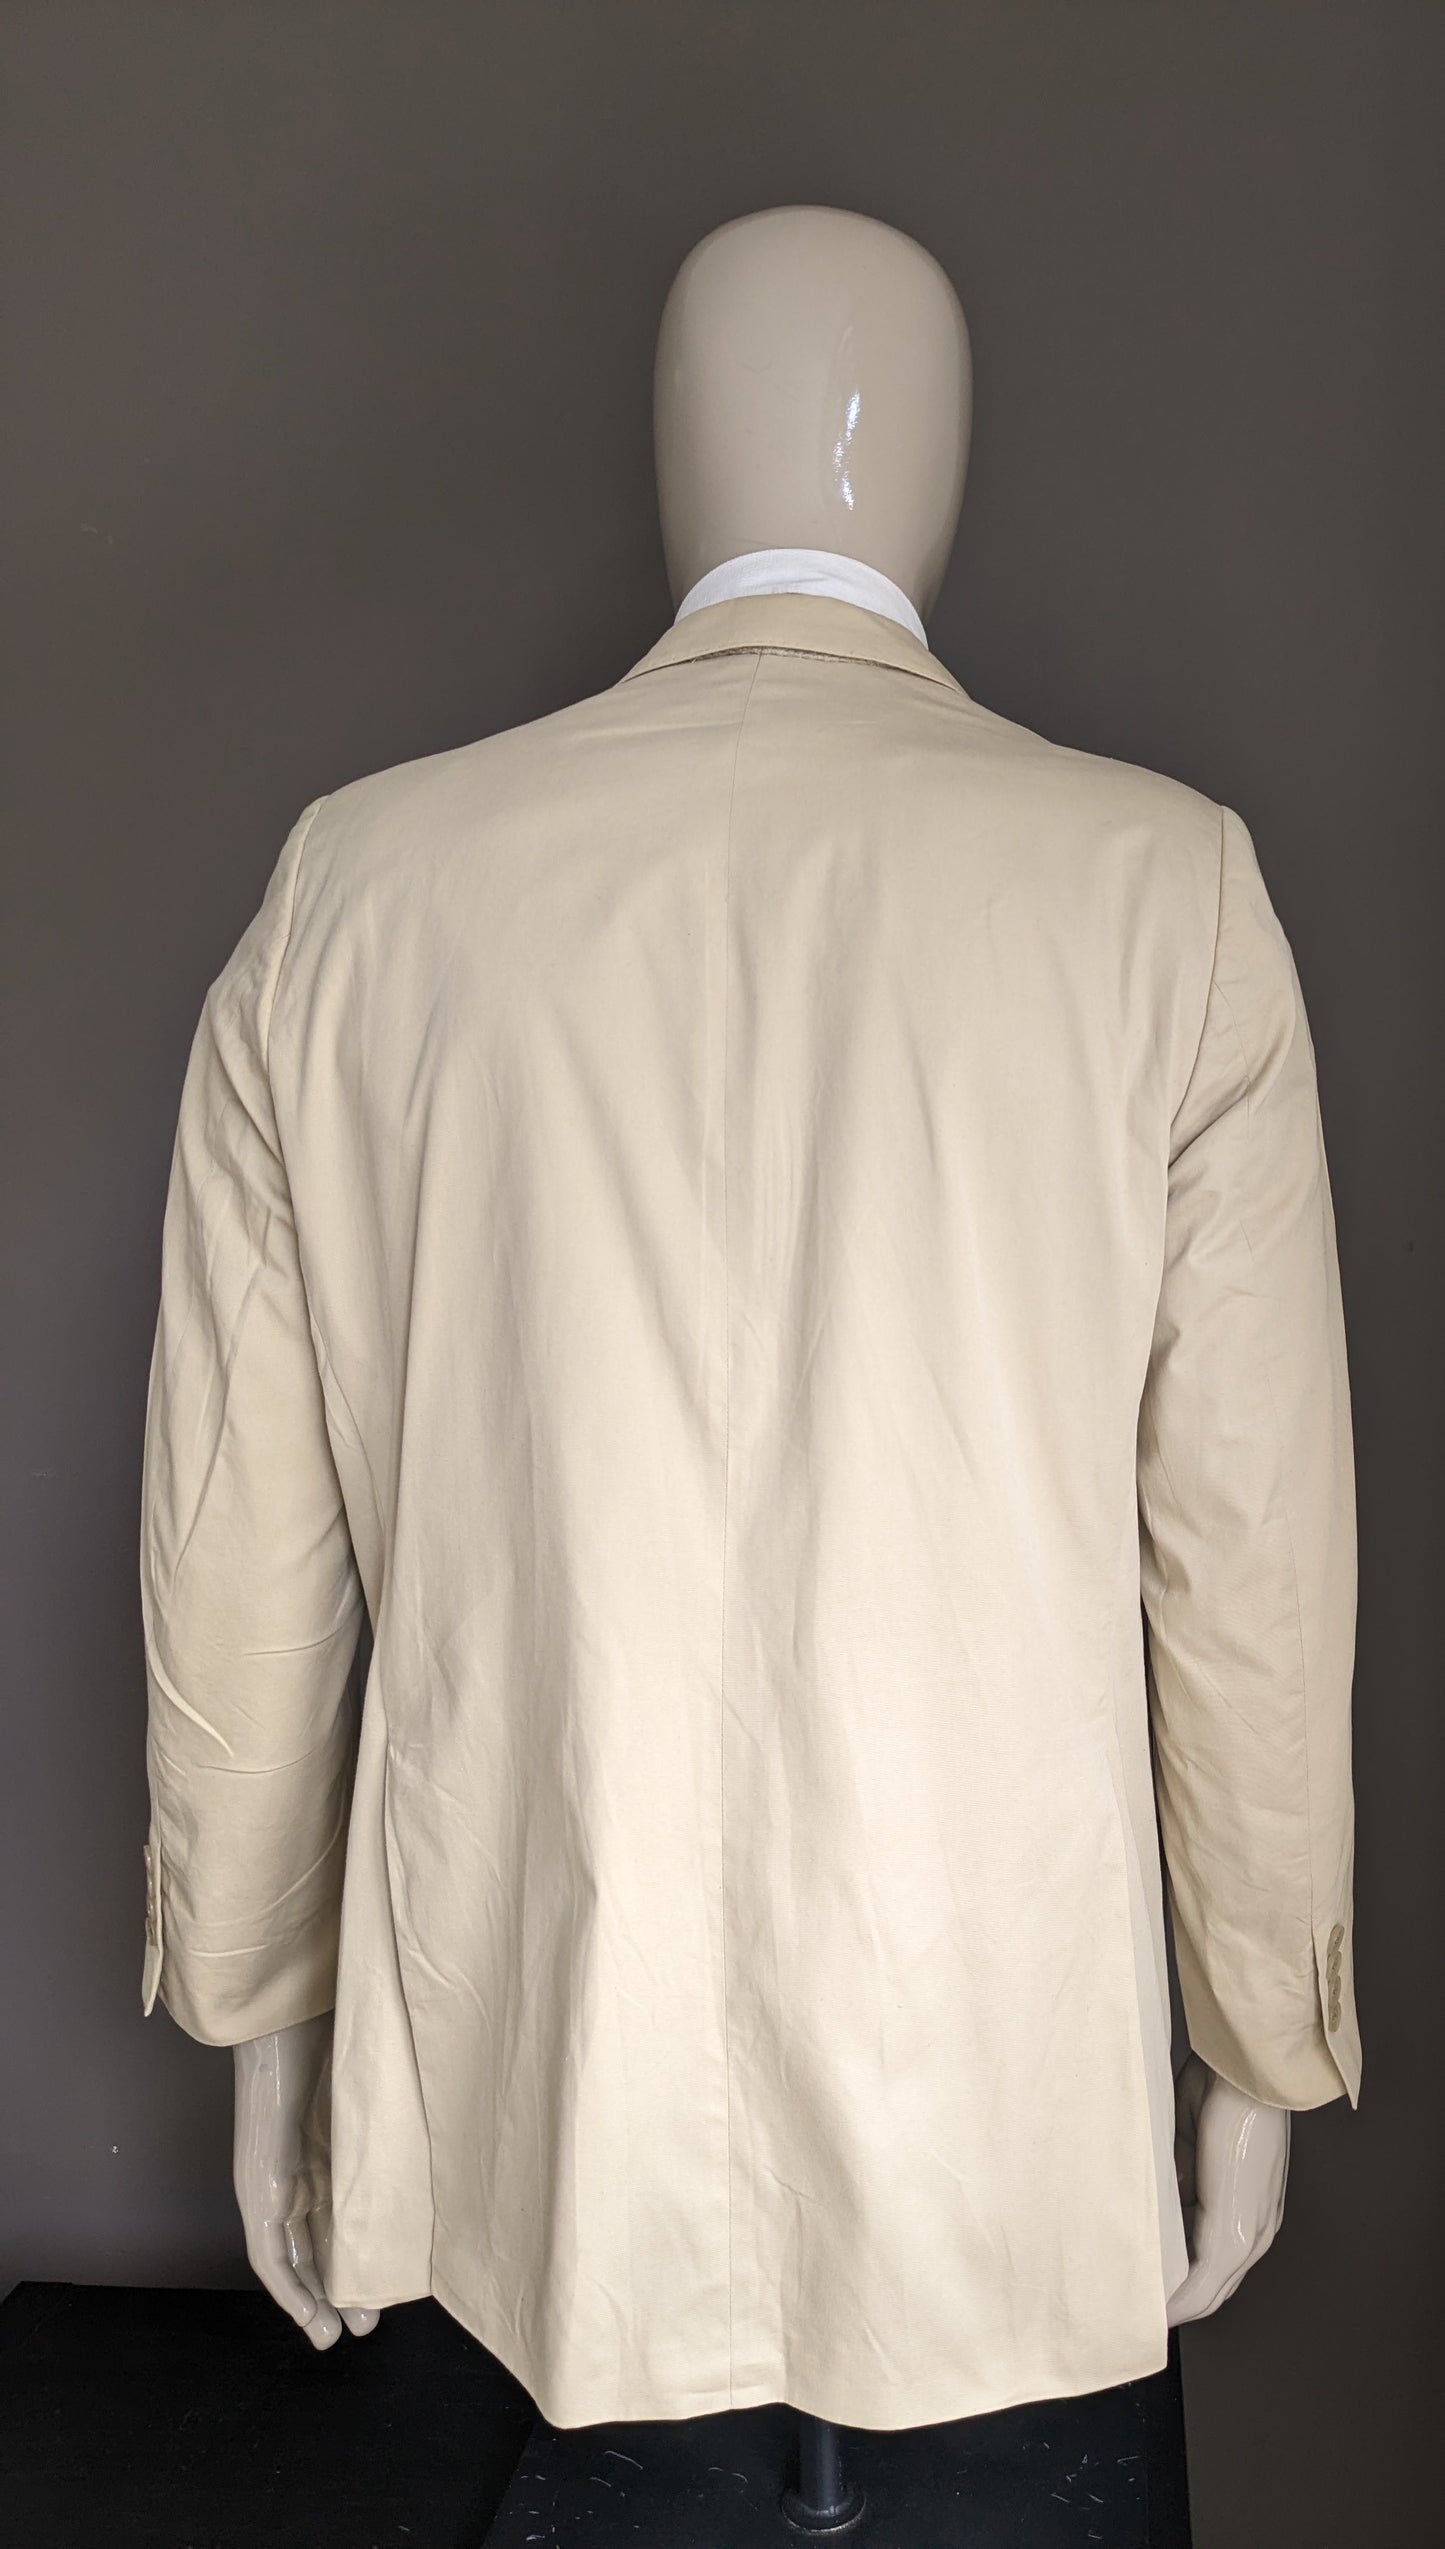 Veste en coton Burberry London. Coloré beige. Taille 26 (52 / L)